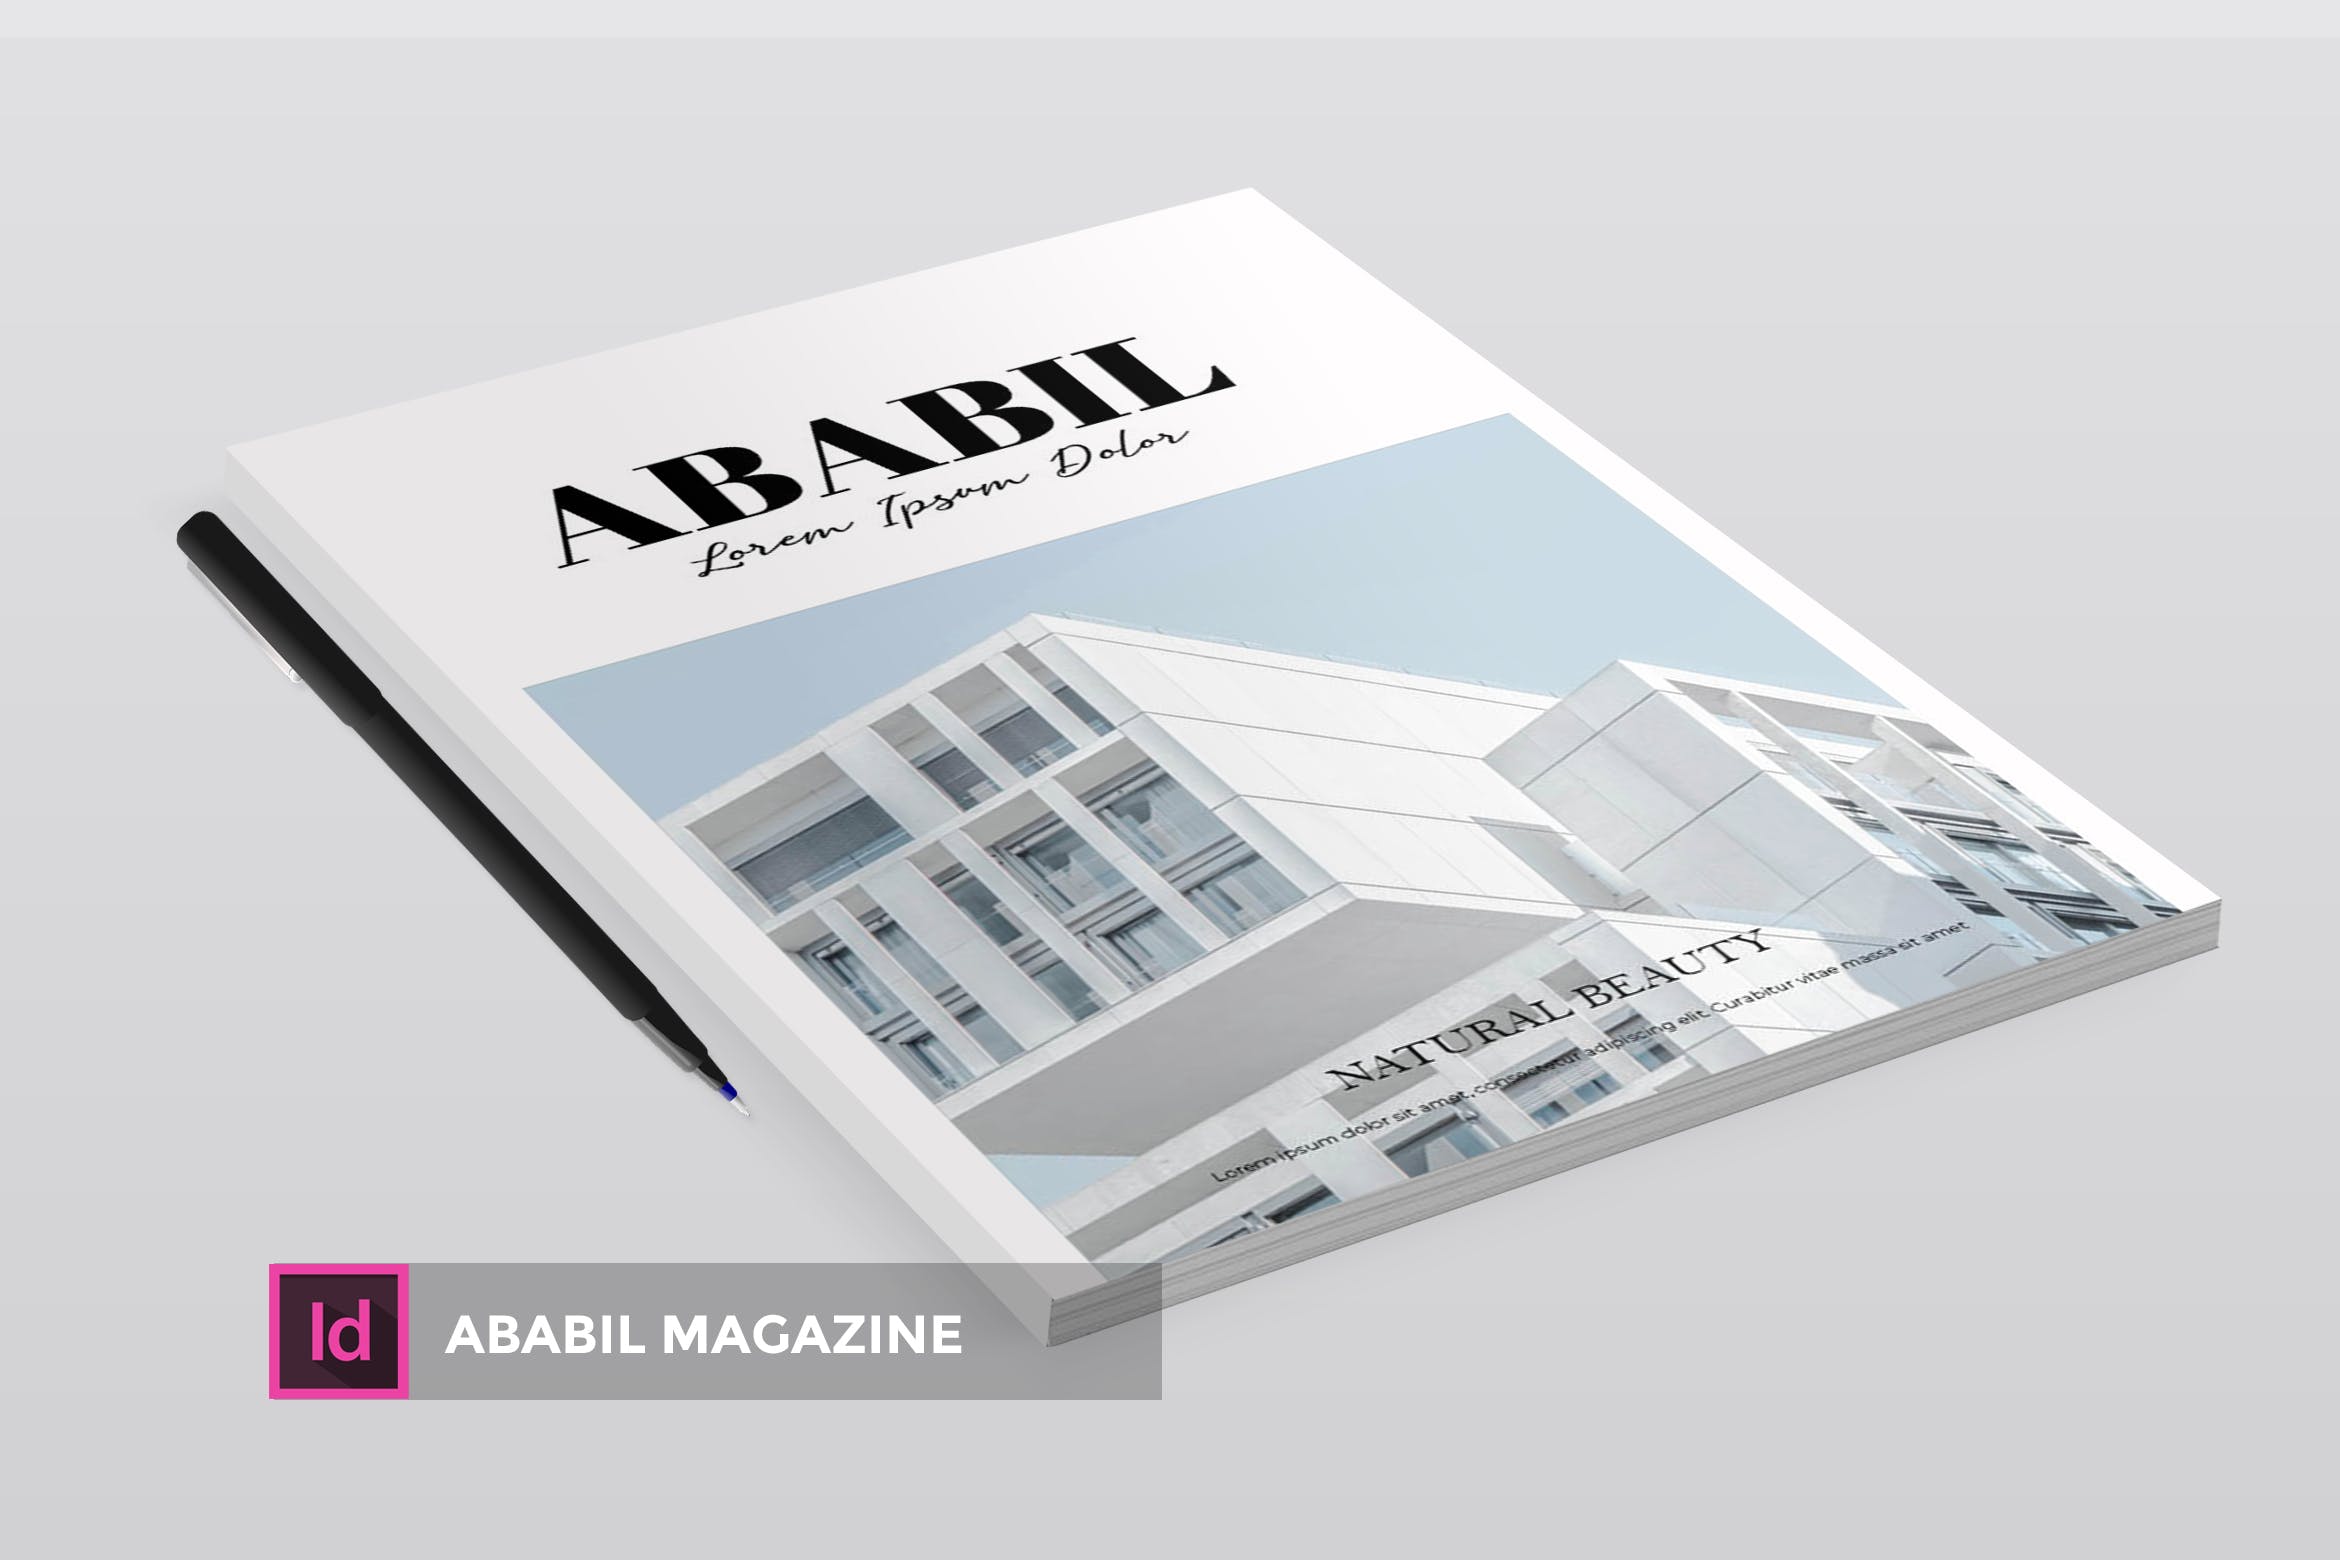 高端建筑/设计/房地产主题素材库精选杂志排版设计INDD模板 ABABIL | Magazine Template插图